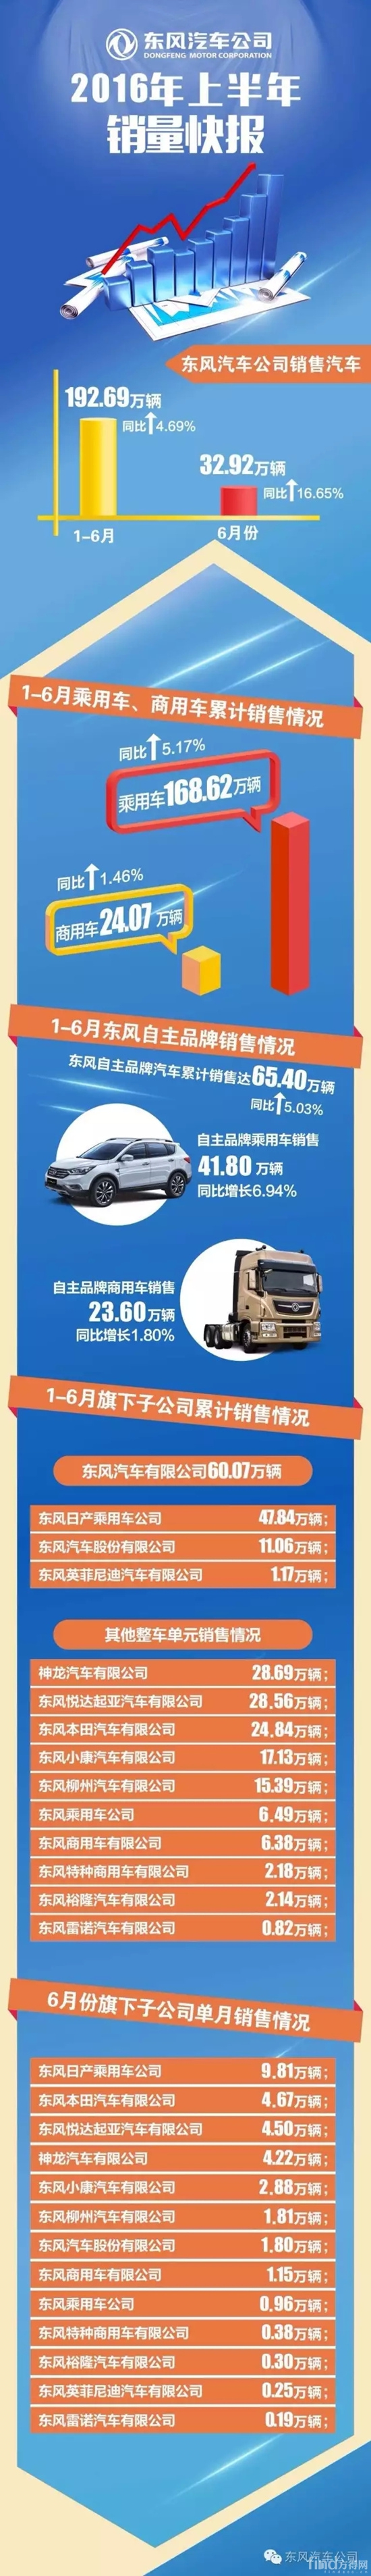 东风上半年销商用车24.07万辆 同比增长1.46% 各分公司数据出炉